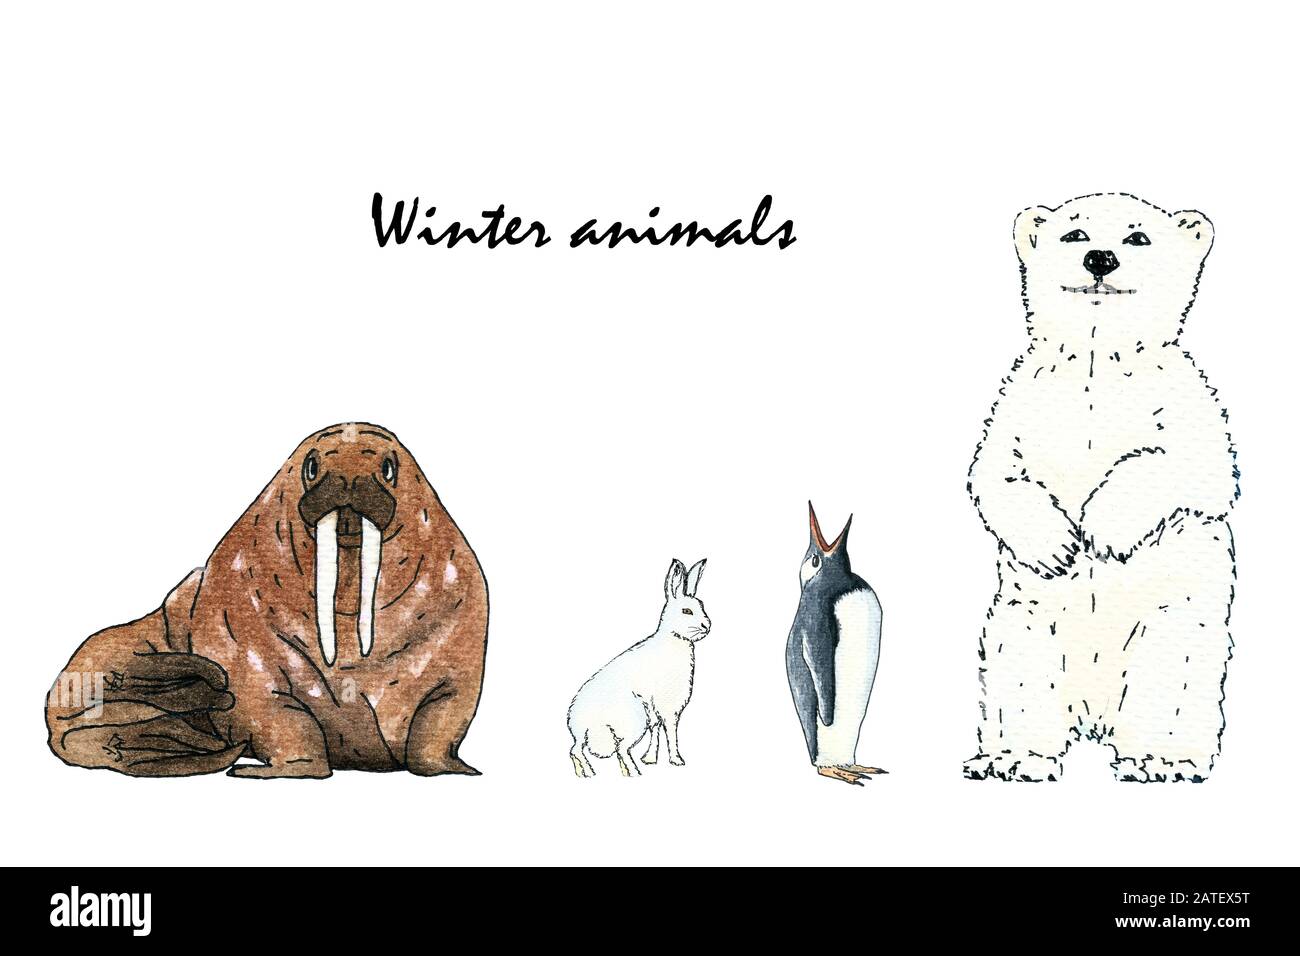 Animales polares. Mamíferos antárticos, océano de vida silvestre aislada.  Gracioso oso oso blanco ártico, ave marina, lindos pingüinos y ciervos.  Caracteres vectoriales de color garza Imagen Vector de stock - Alamy